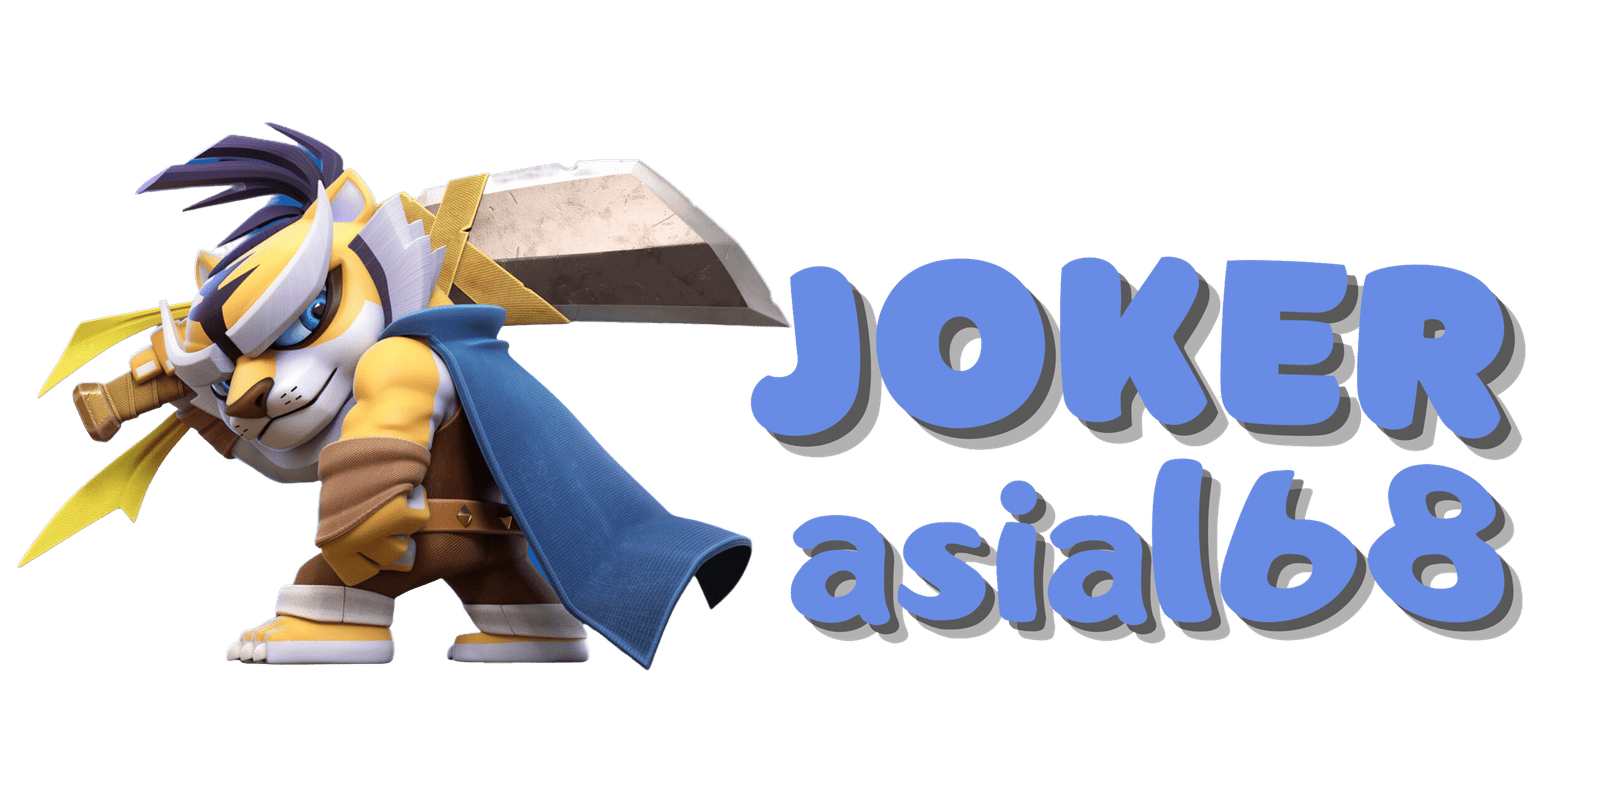 joker-asia168-game